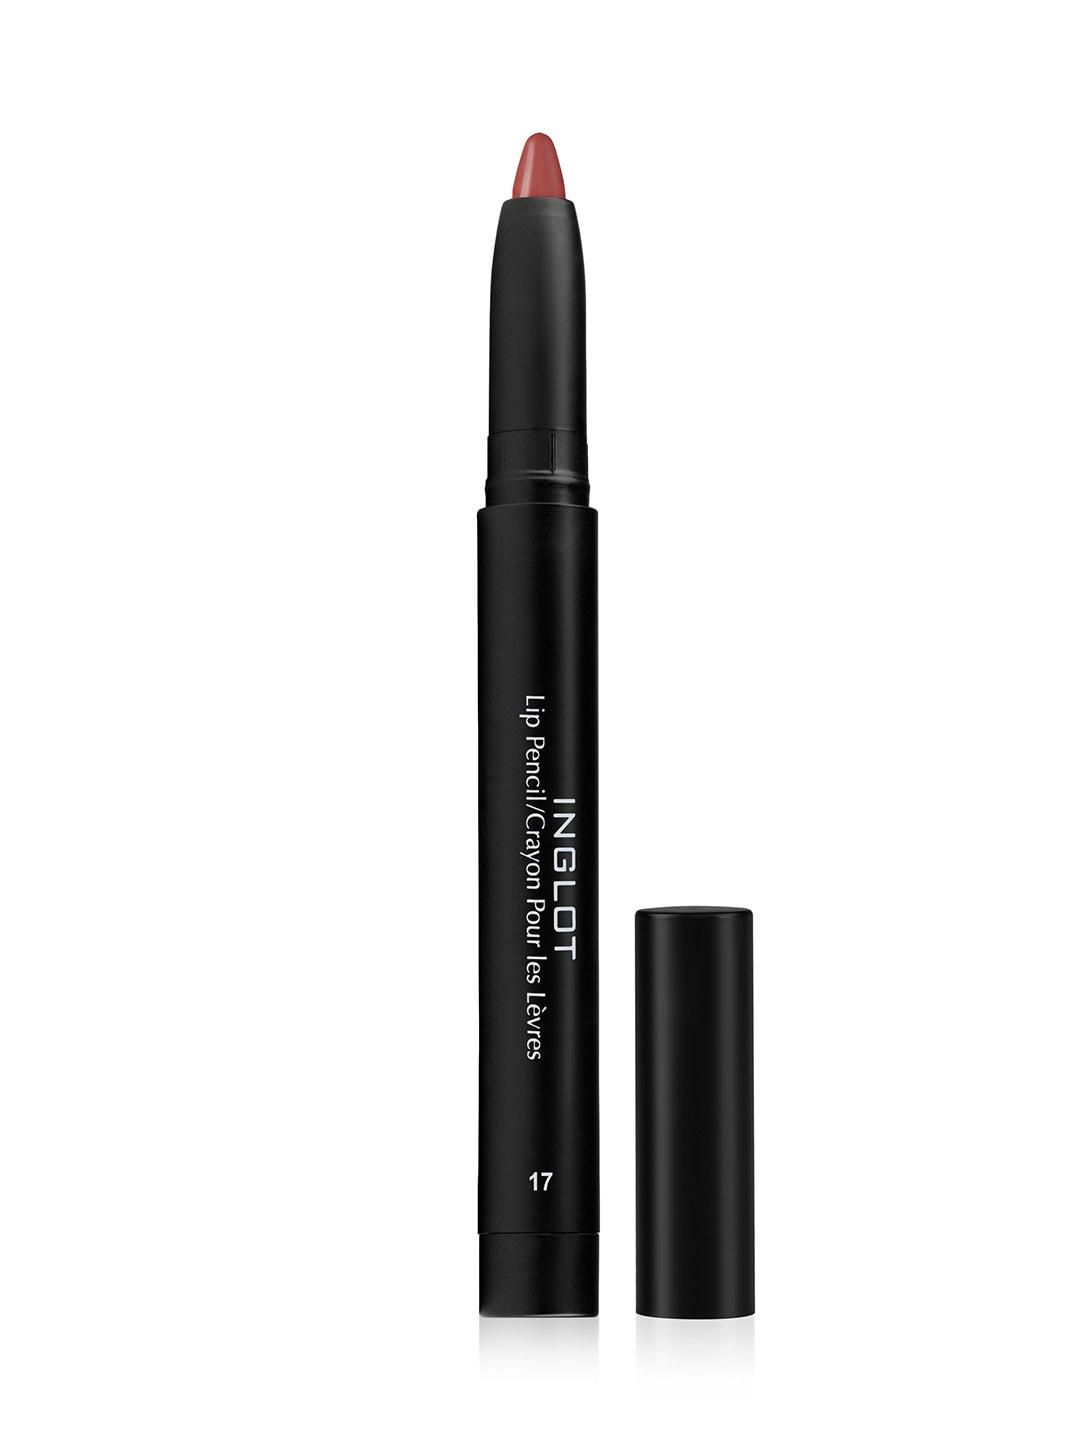 inglot amc matte lip pencil crayon with sharpener - 17